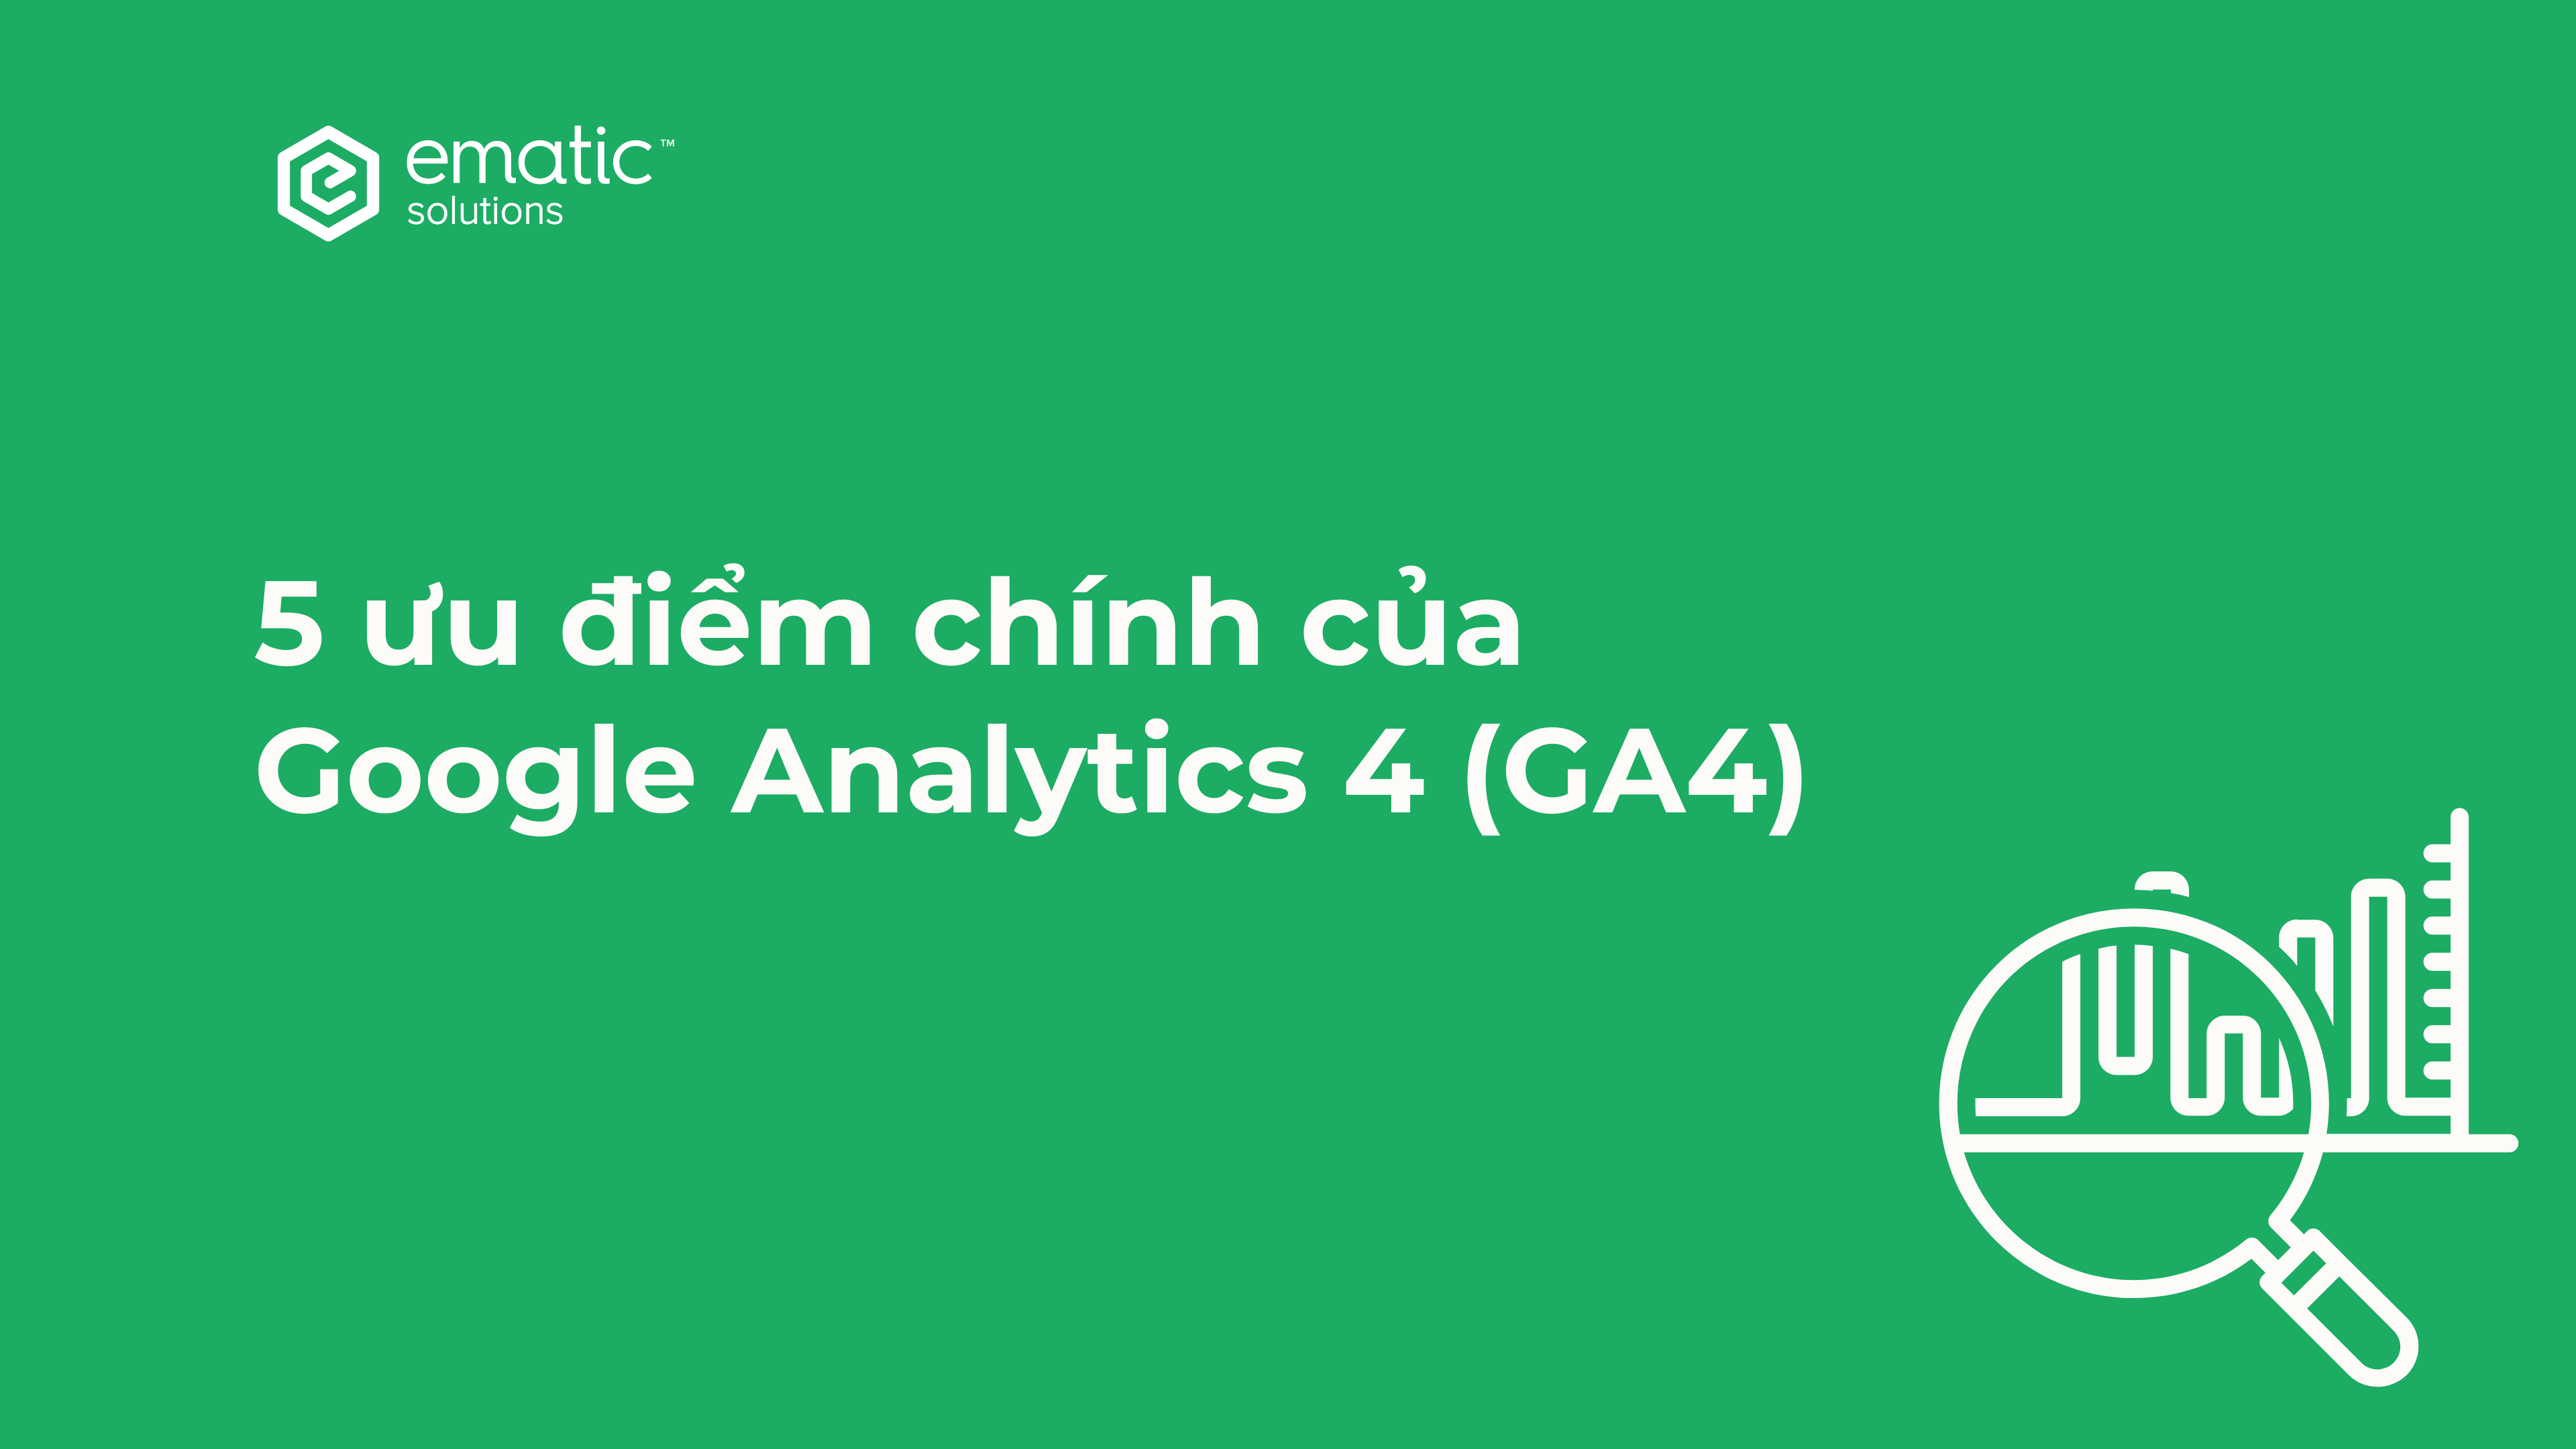 5 ưu điểm chính của Google Analytics 4 (GA4)